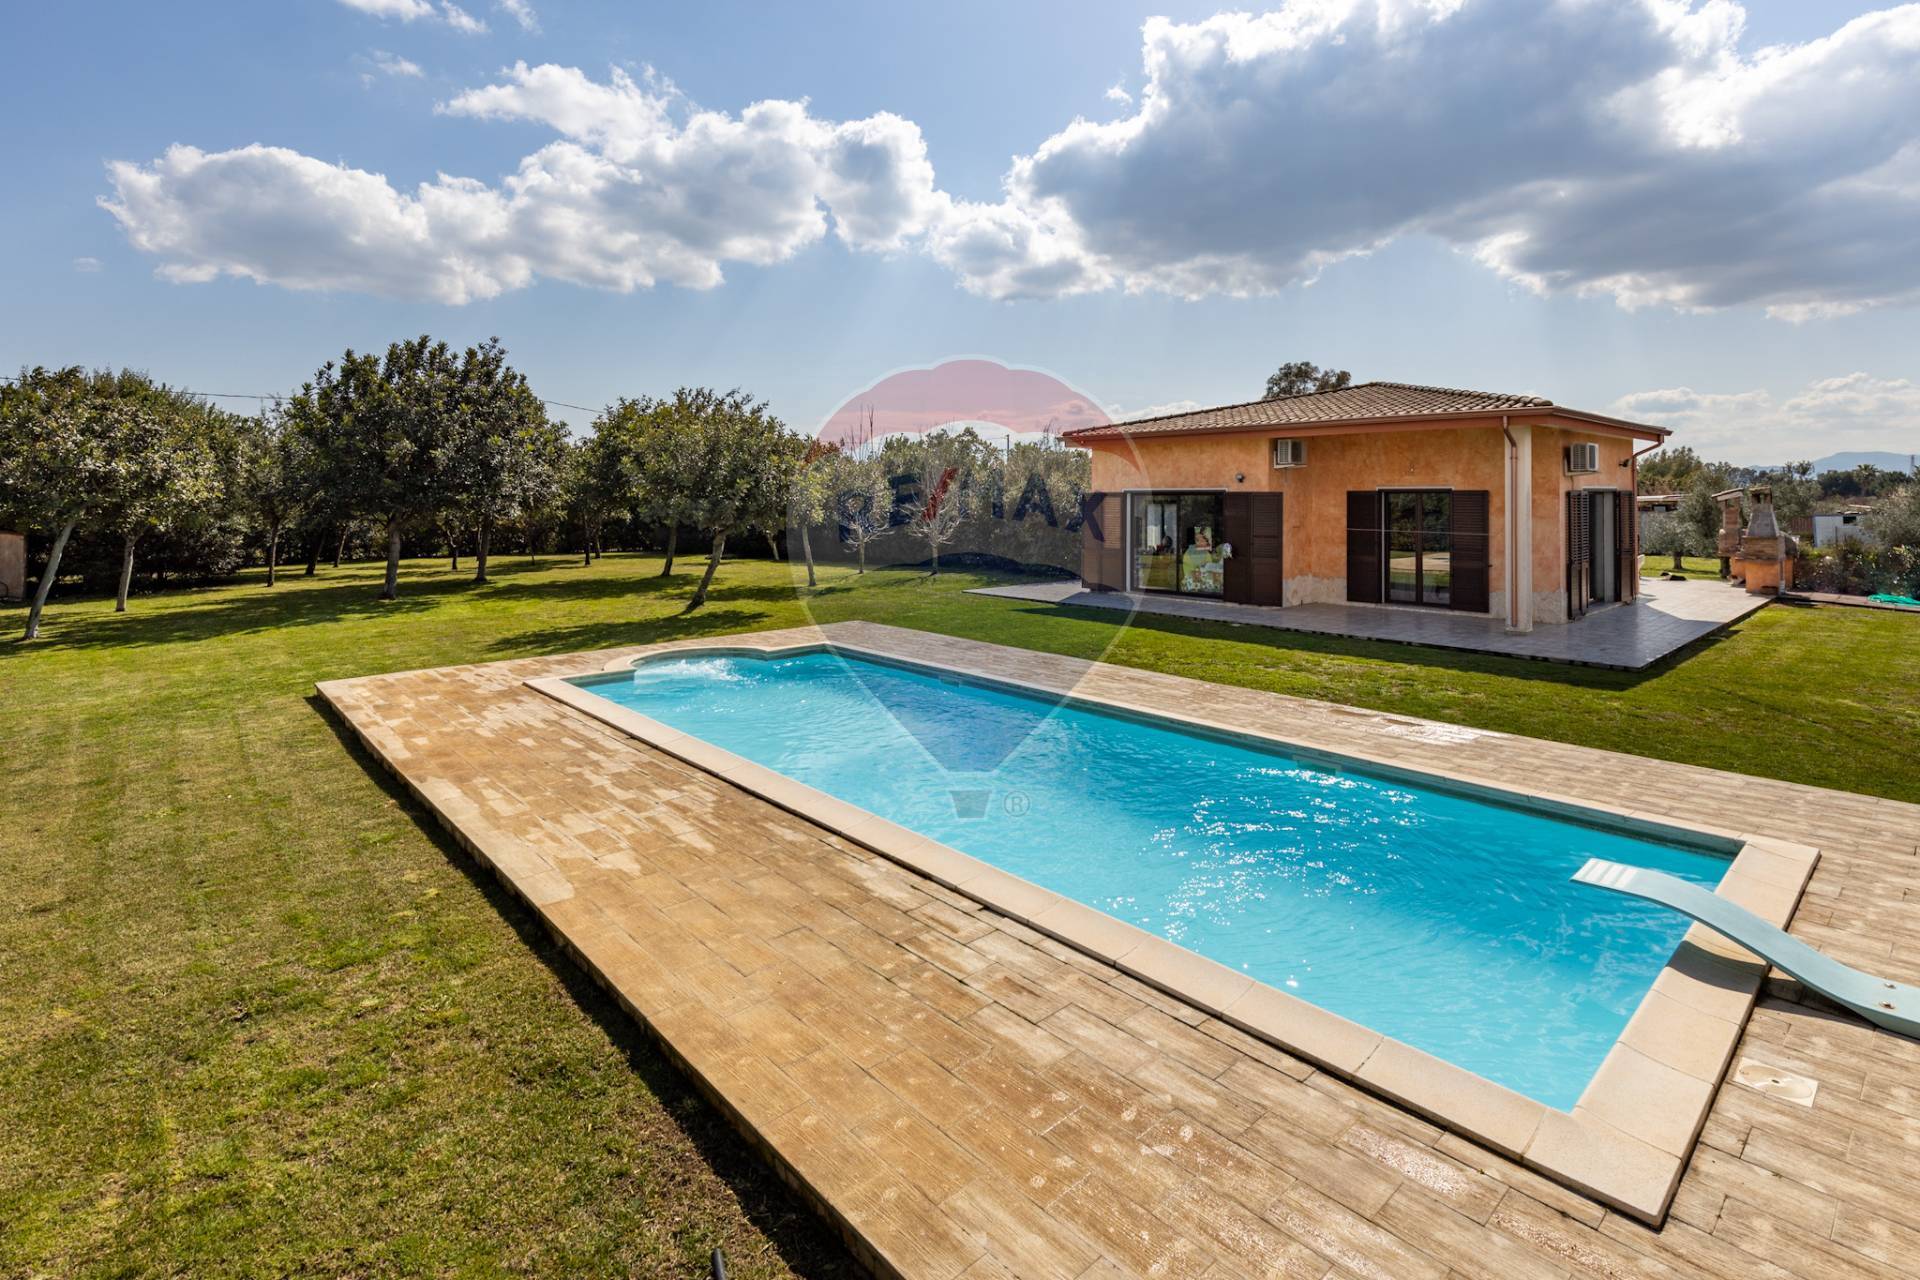 Villa in vendita a Decimomannu, 4 locali, prezzo € 315.000 | PortaleAgenzieImmobiliari.it